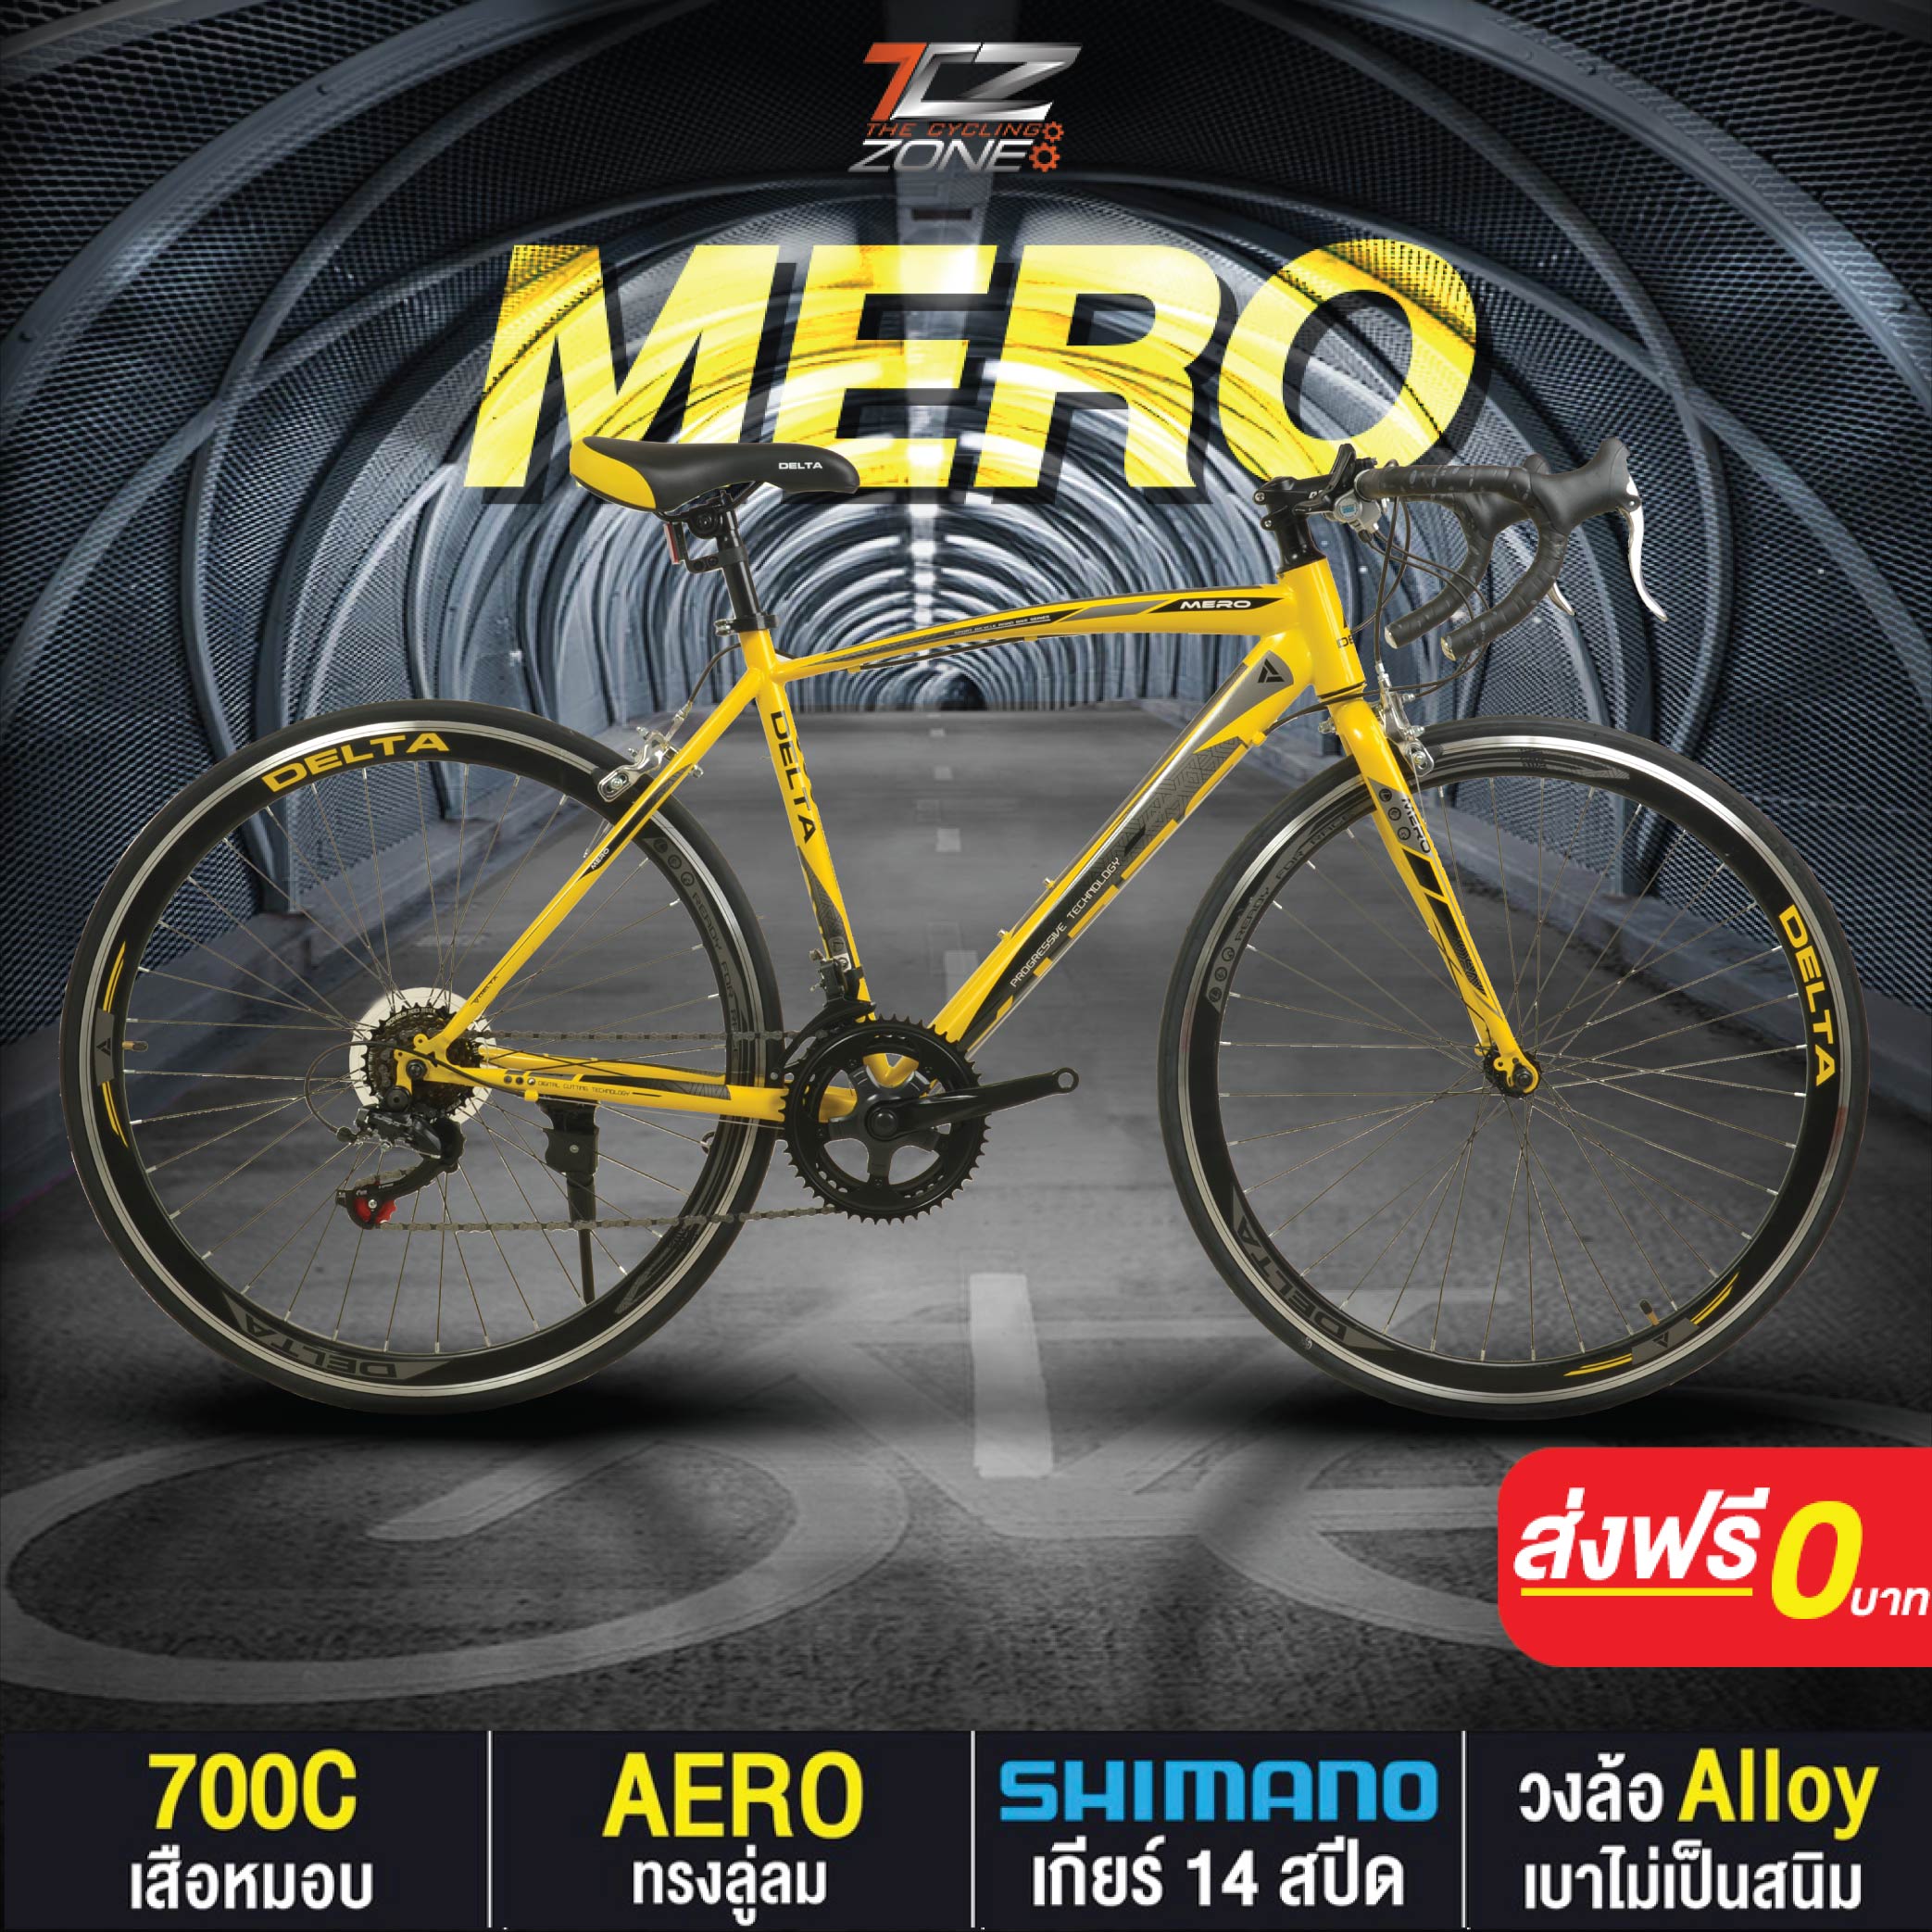 จักรยานเสือหมอบ 700C / DELTA เกียร์ SHIMANO 14 สปีด / ไซส์ 49 / รุ่น MERO By The Cycling Zone